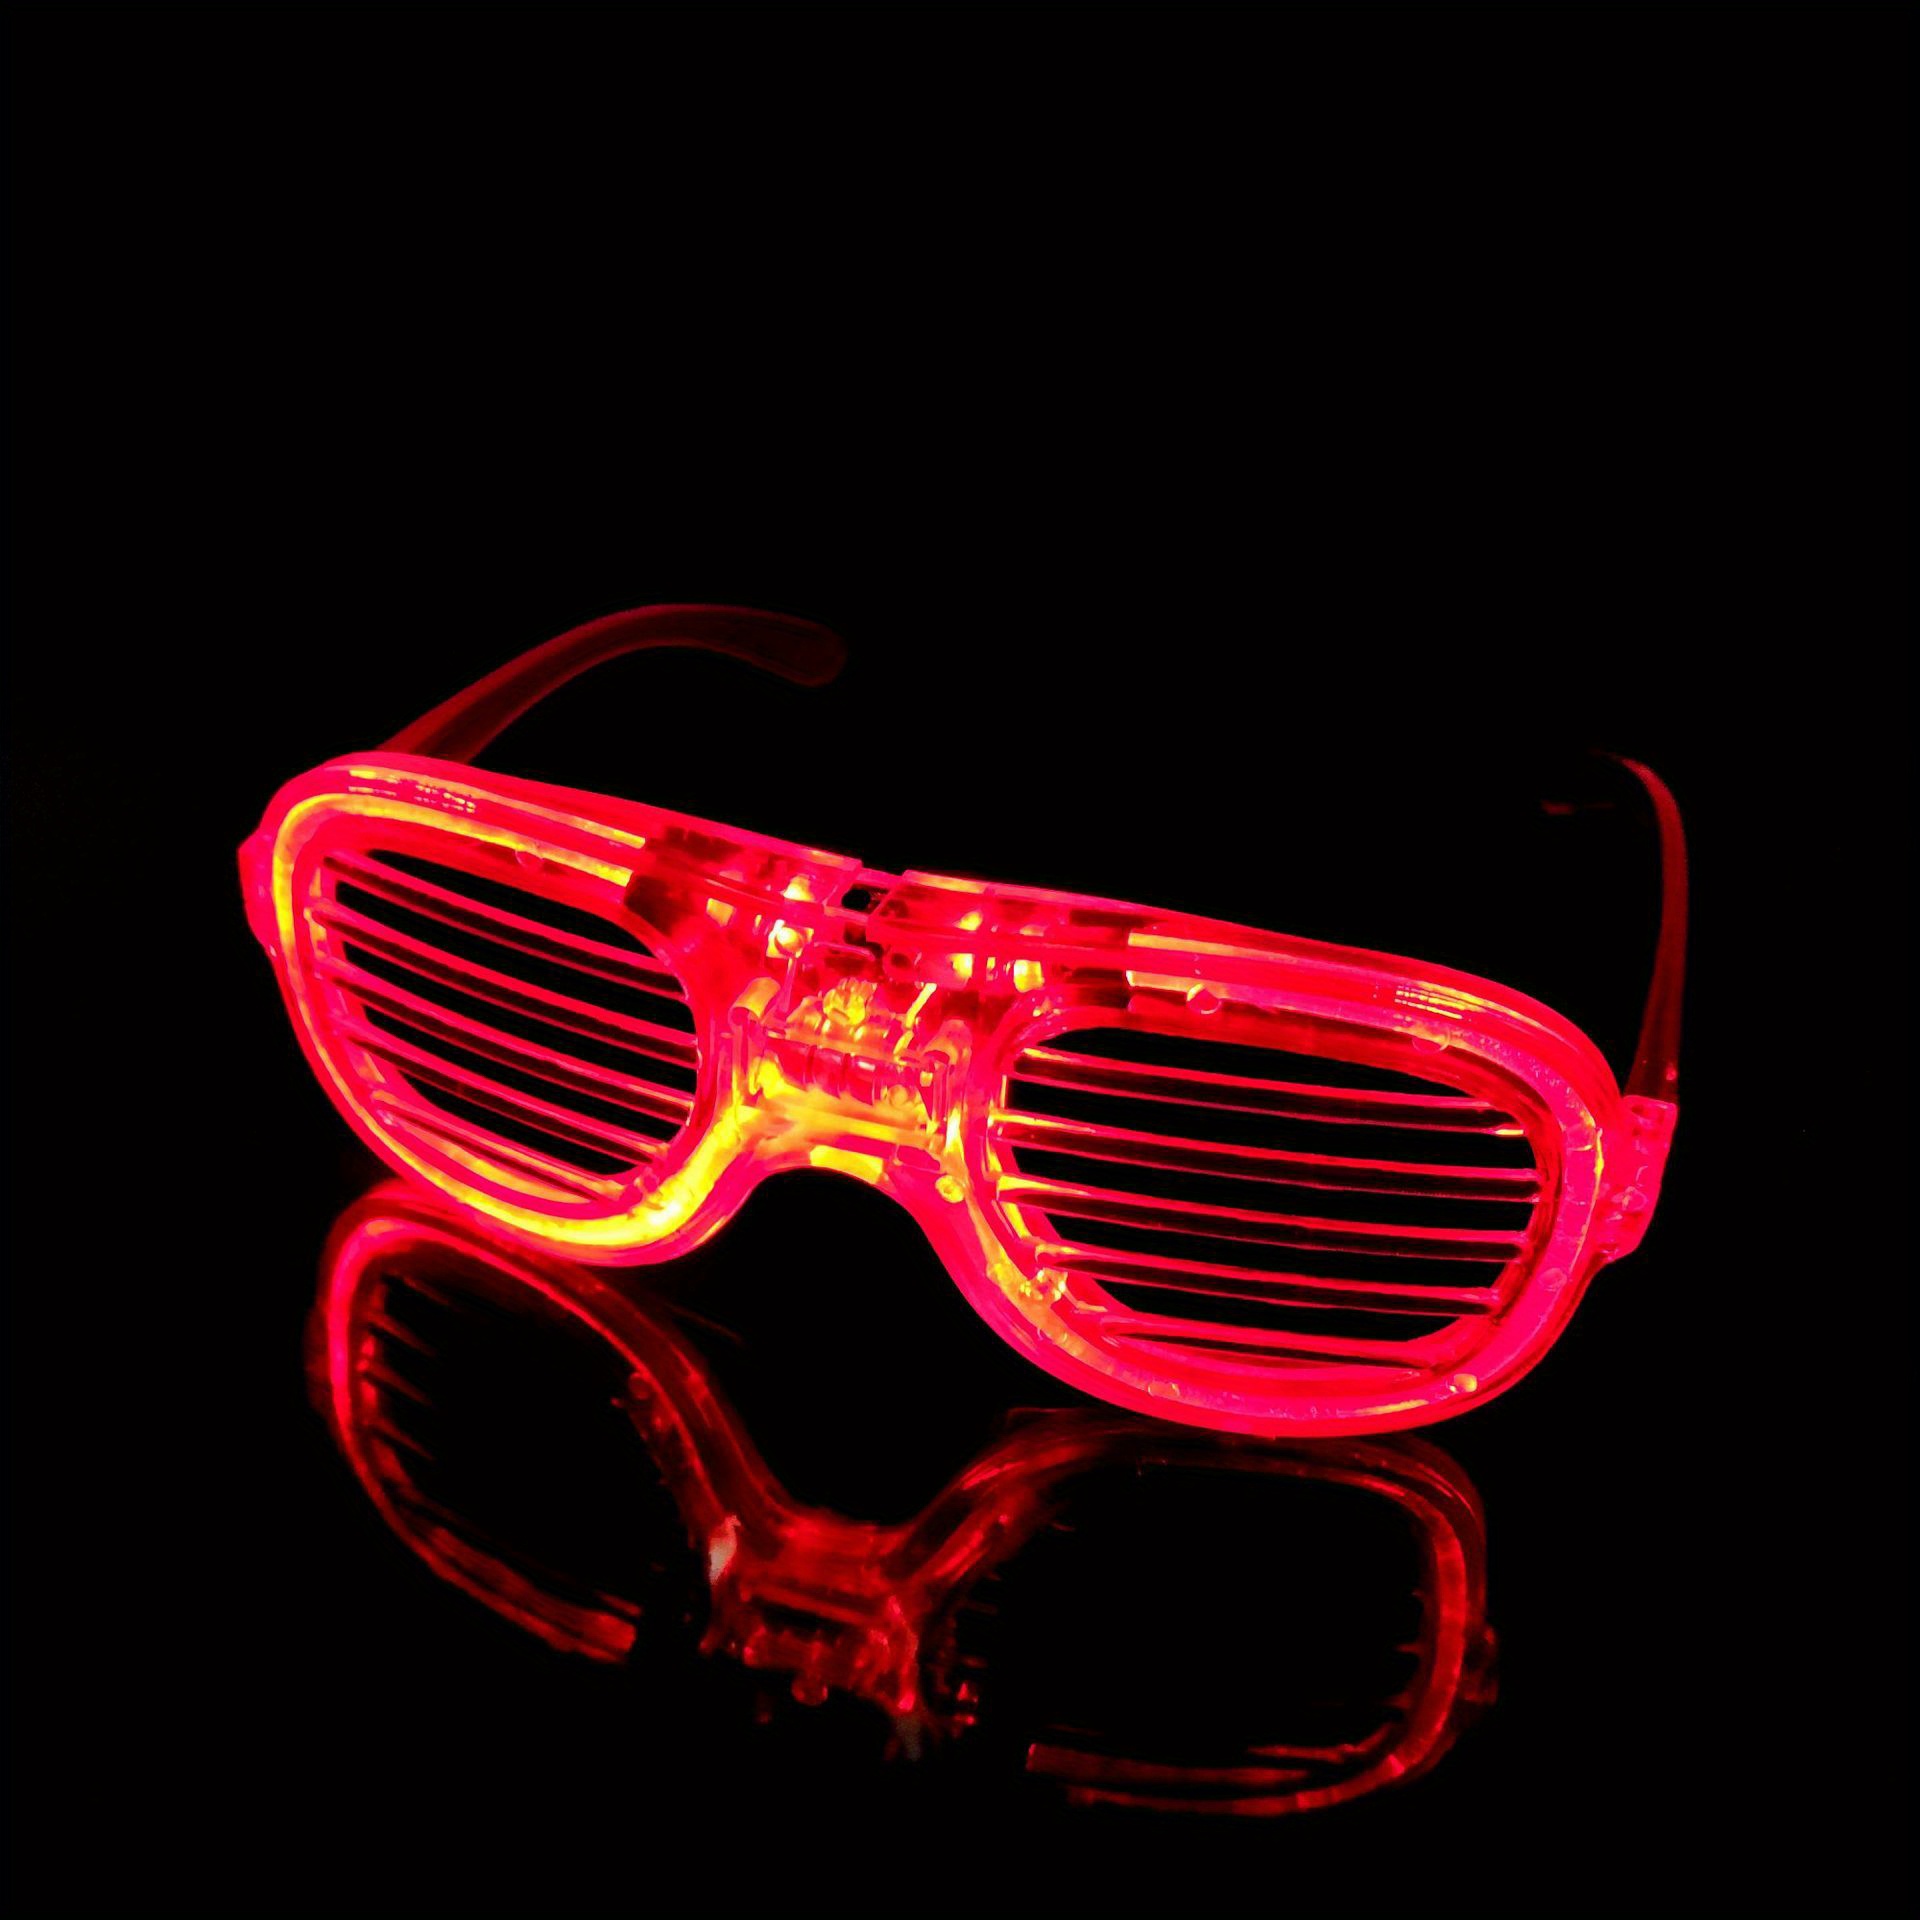 Gafas Luminosas LED Gafas de Neón, 12 Piezas Gafas de Fiesta para Niños  Adultos, Gafas LED Intermitentes, Decoración Accesorios Divertido para  Fiestas, Cumpleaños, Raves, Concierto, Navidad, Halloween : :  Hogar y cocina